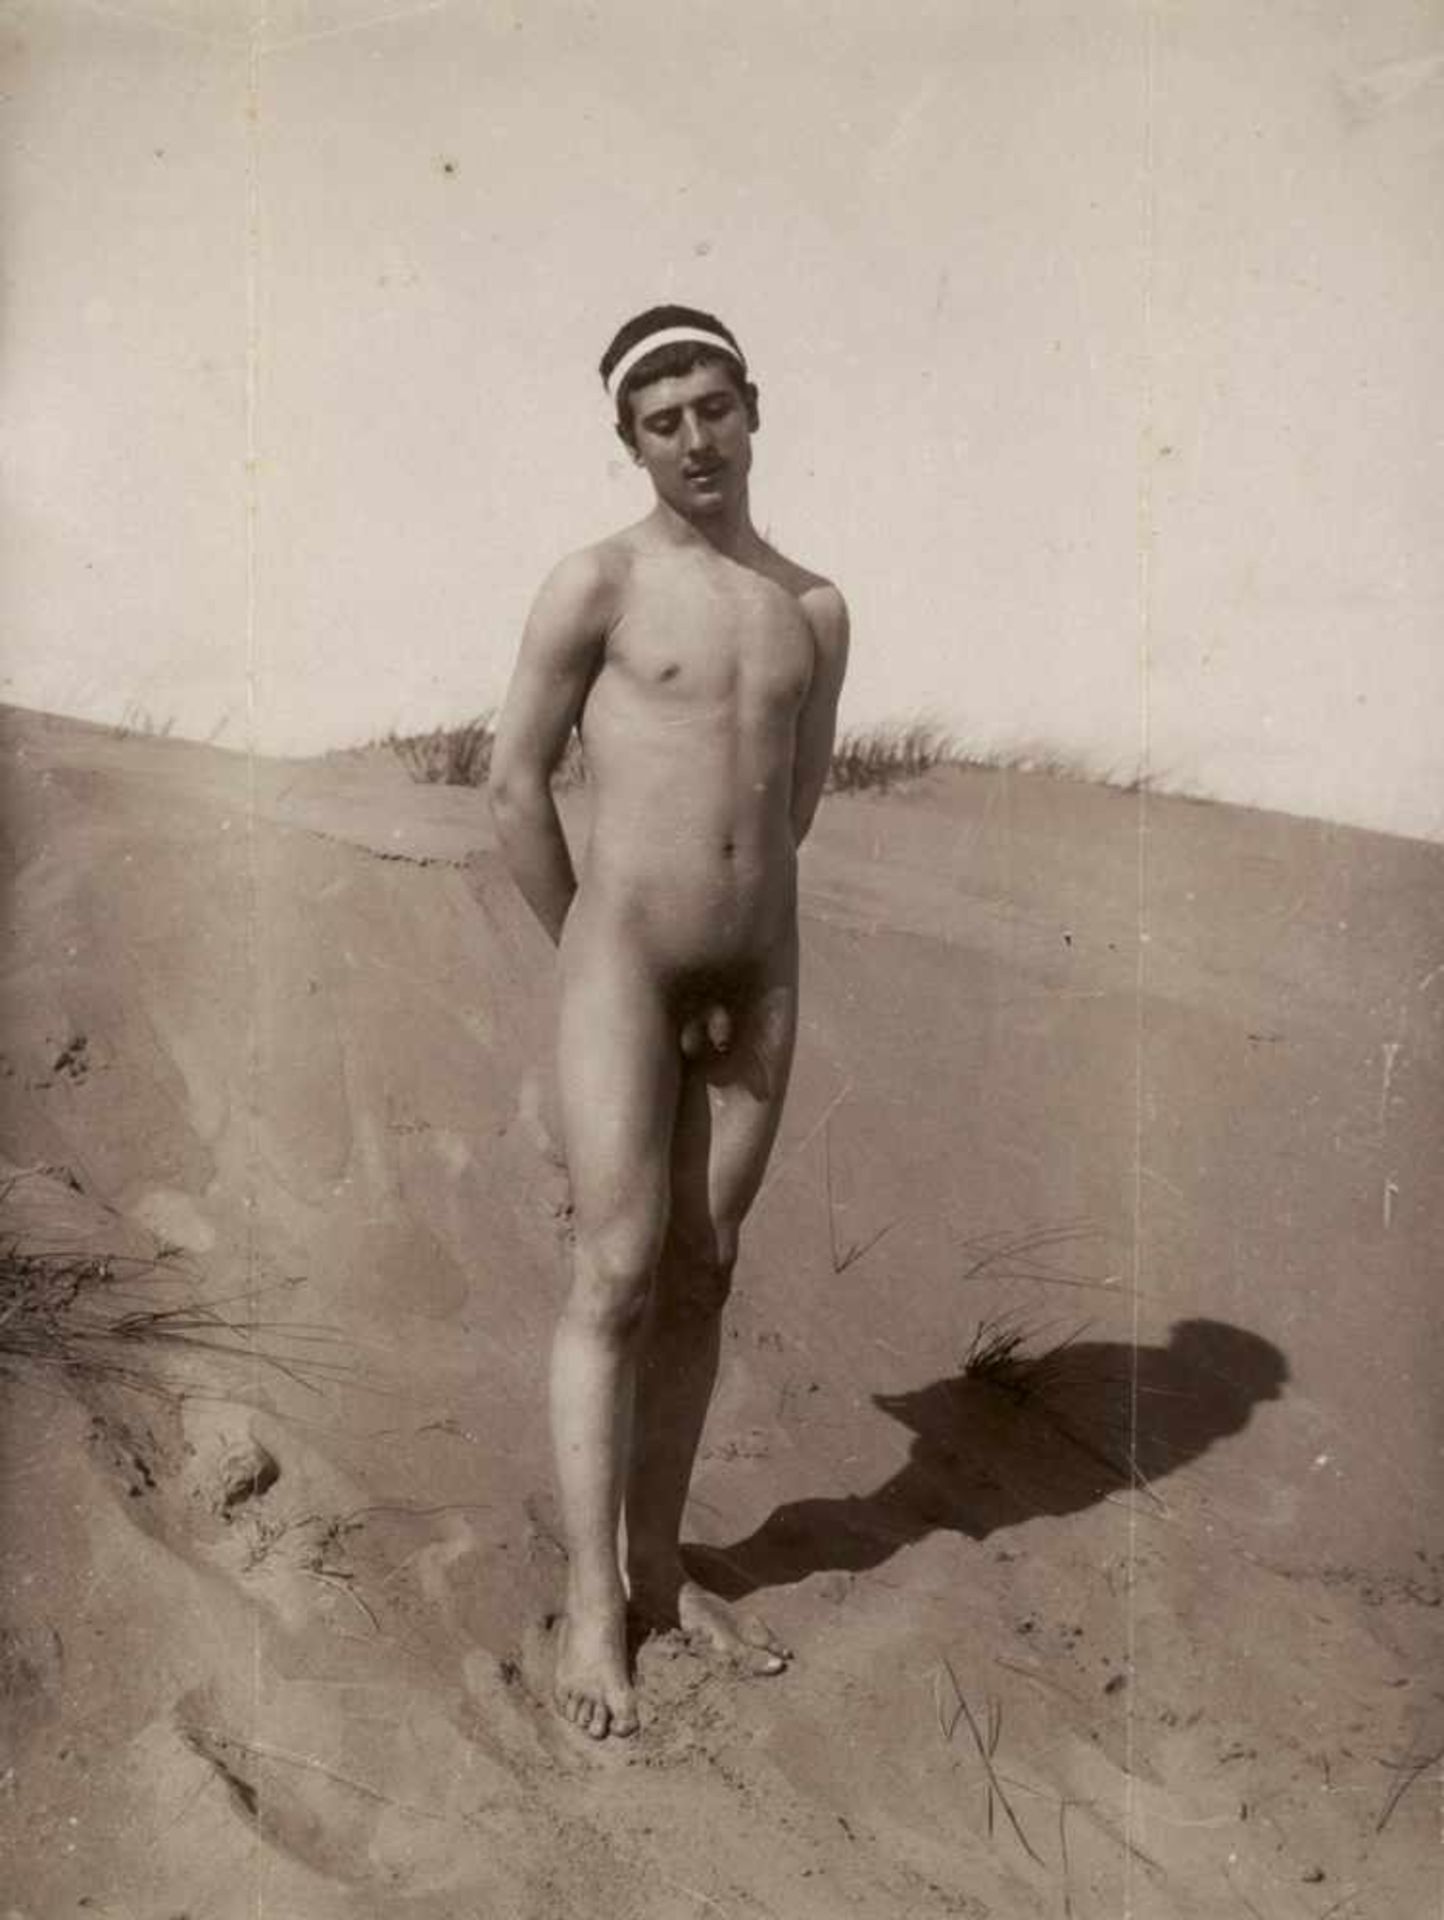 Gloeden, Wilhelm von: Nude youth on beachNude youth on beach. Circa 1900. Albumen print. 22,2 x 16,8